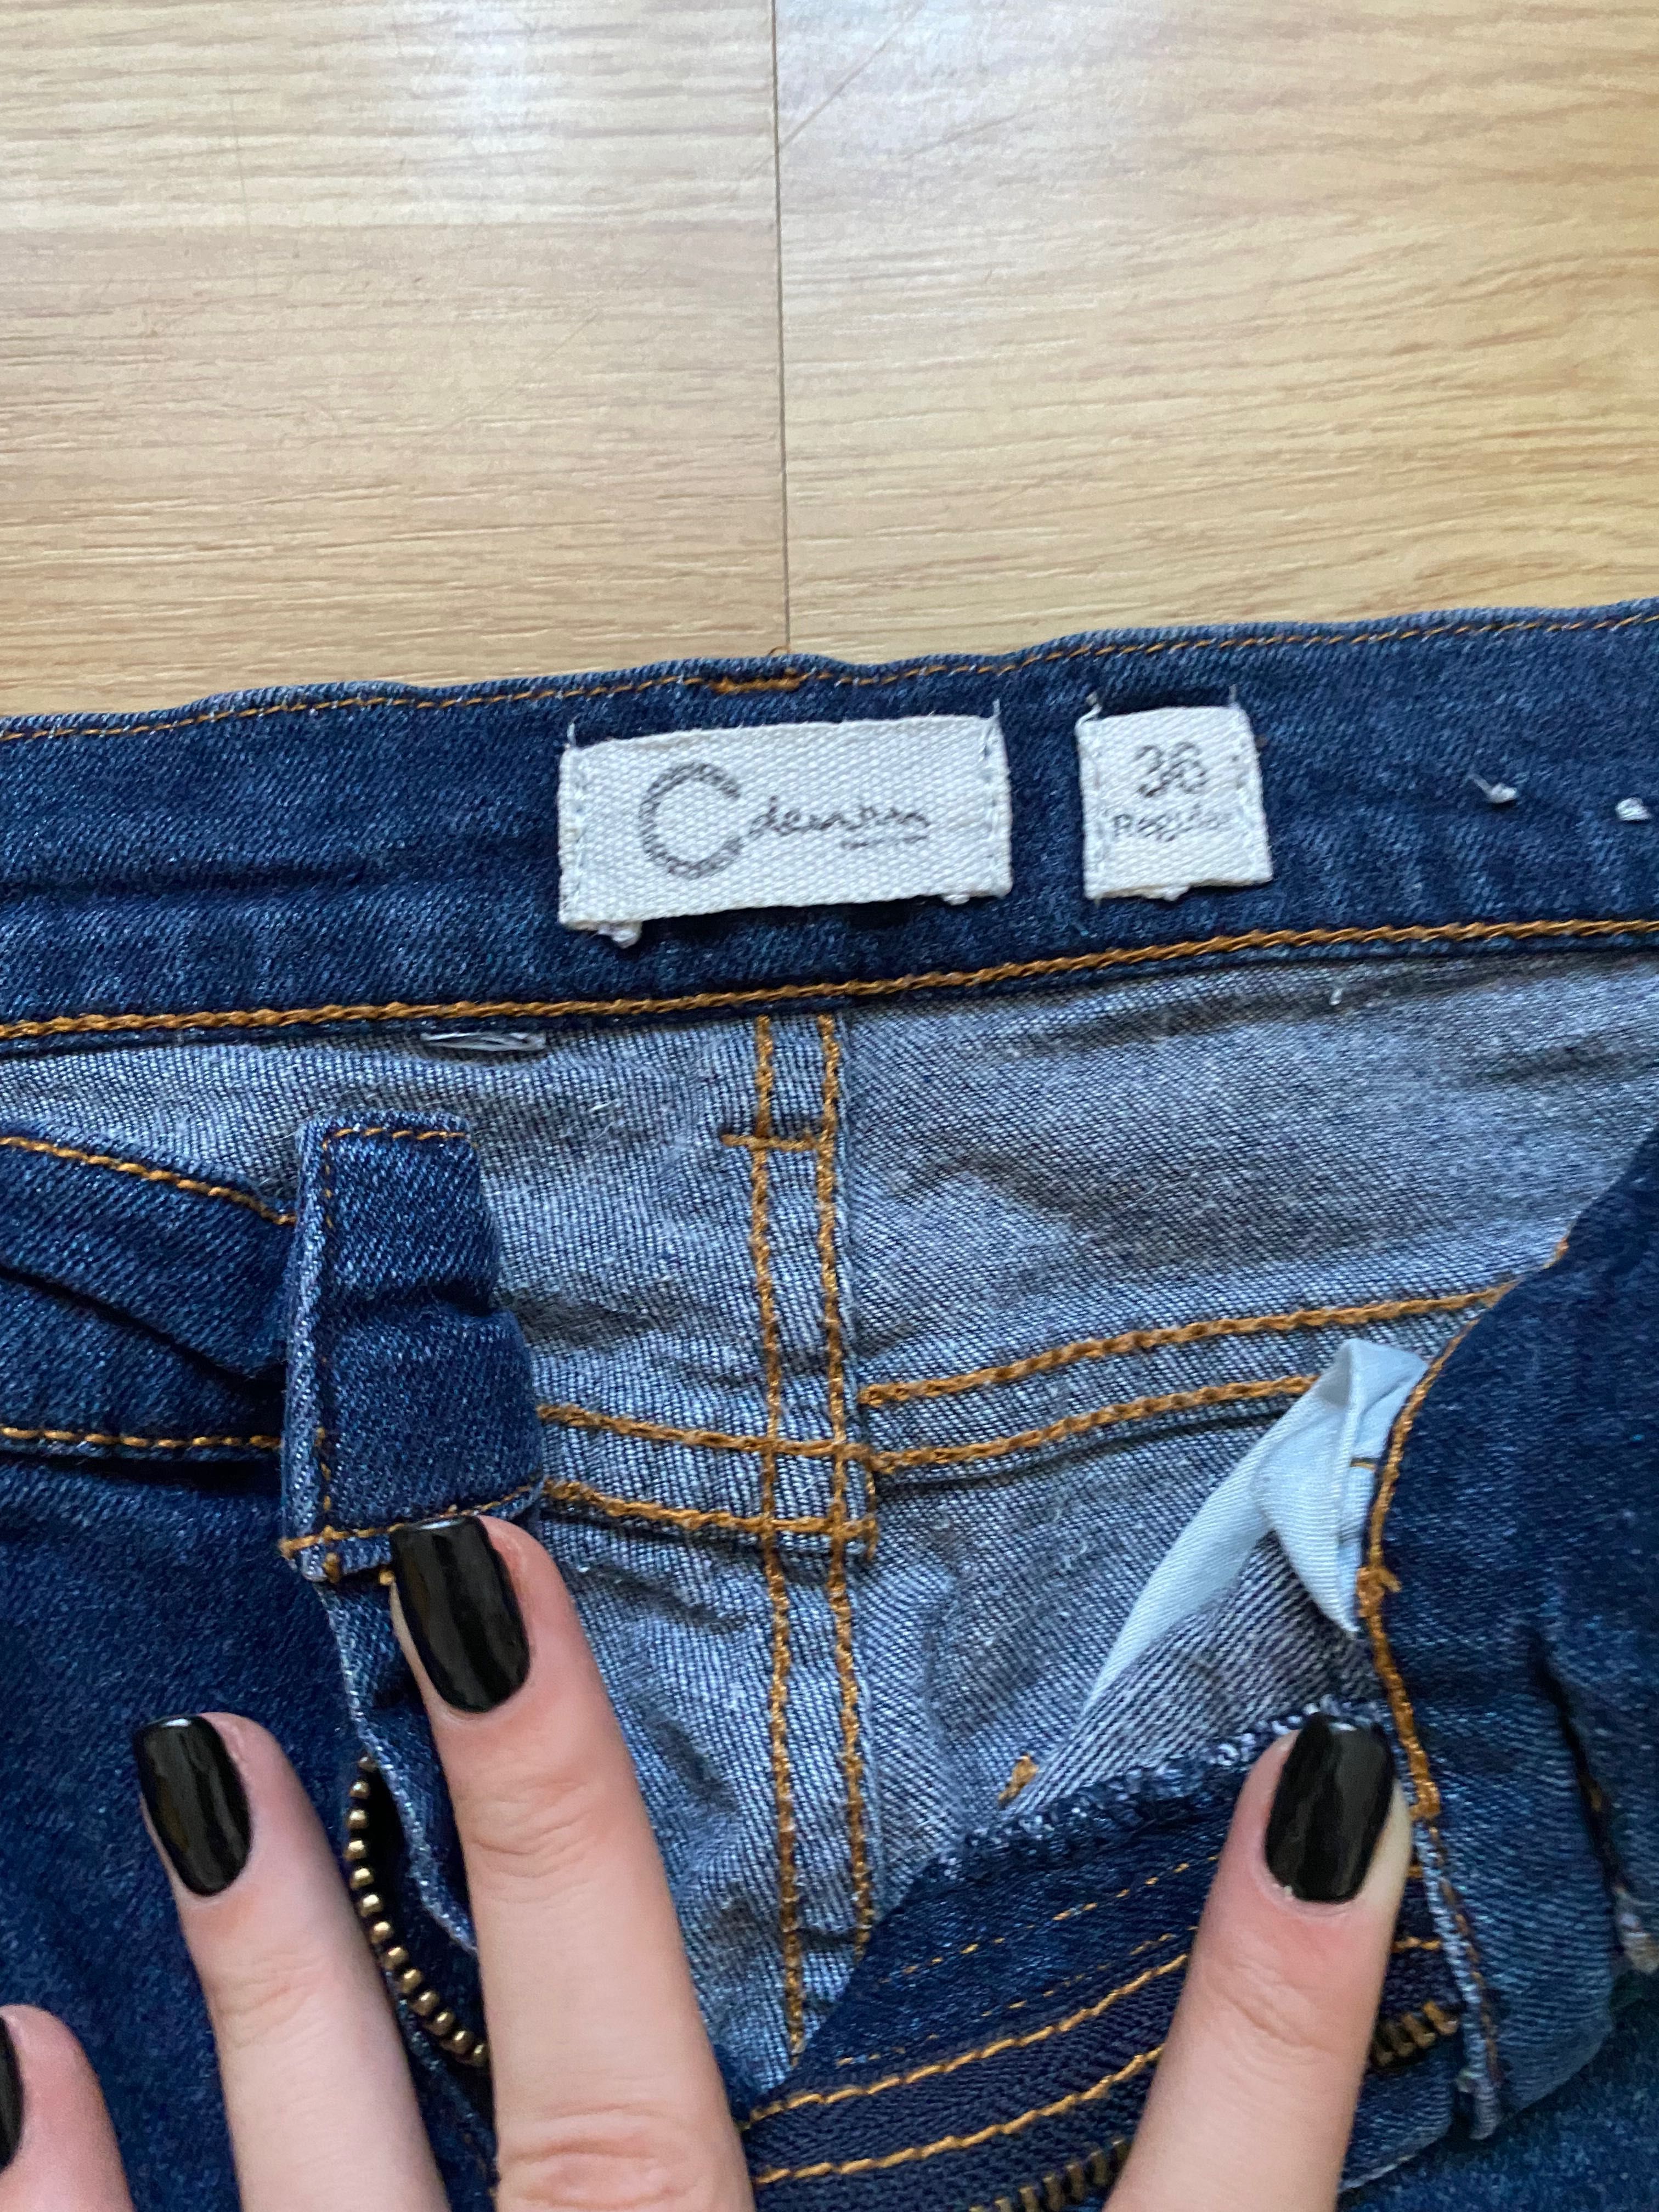 Klasyczne ciemne jeansy - rozmiar 36